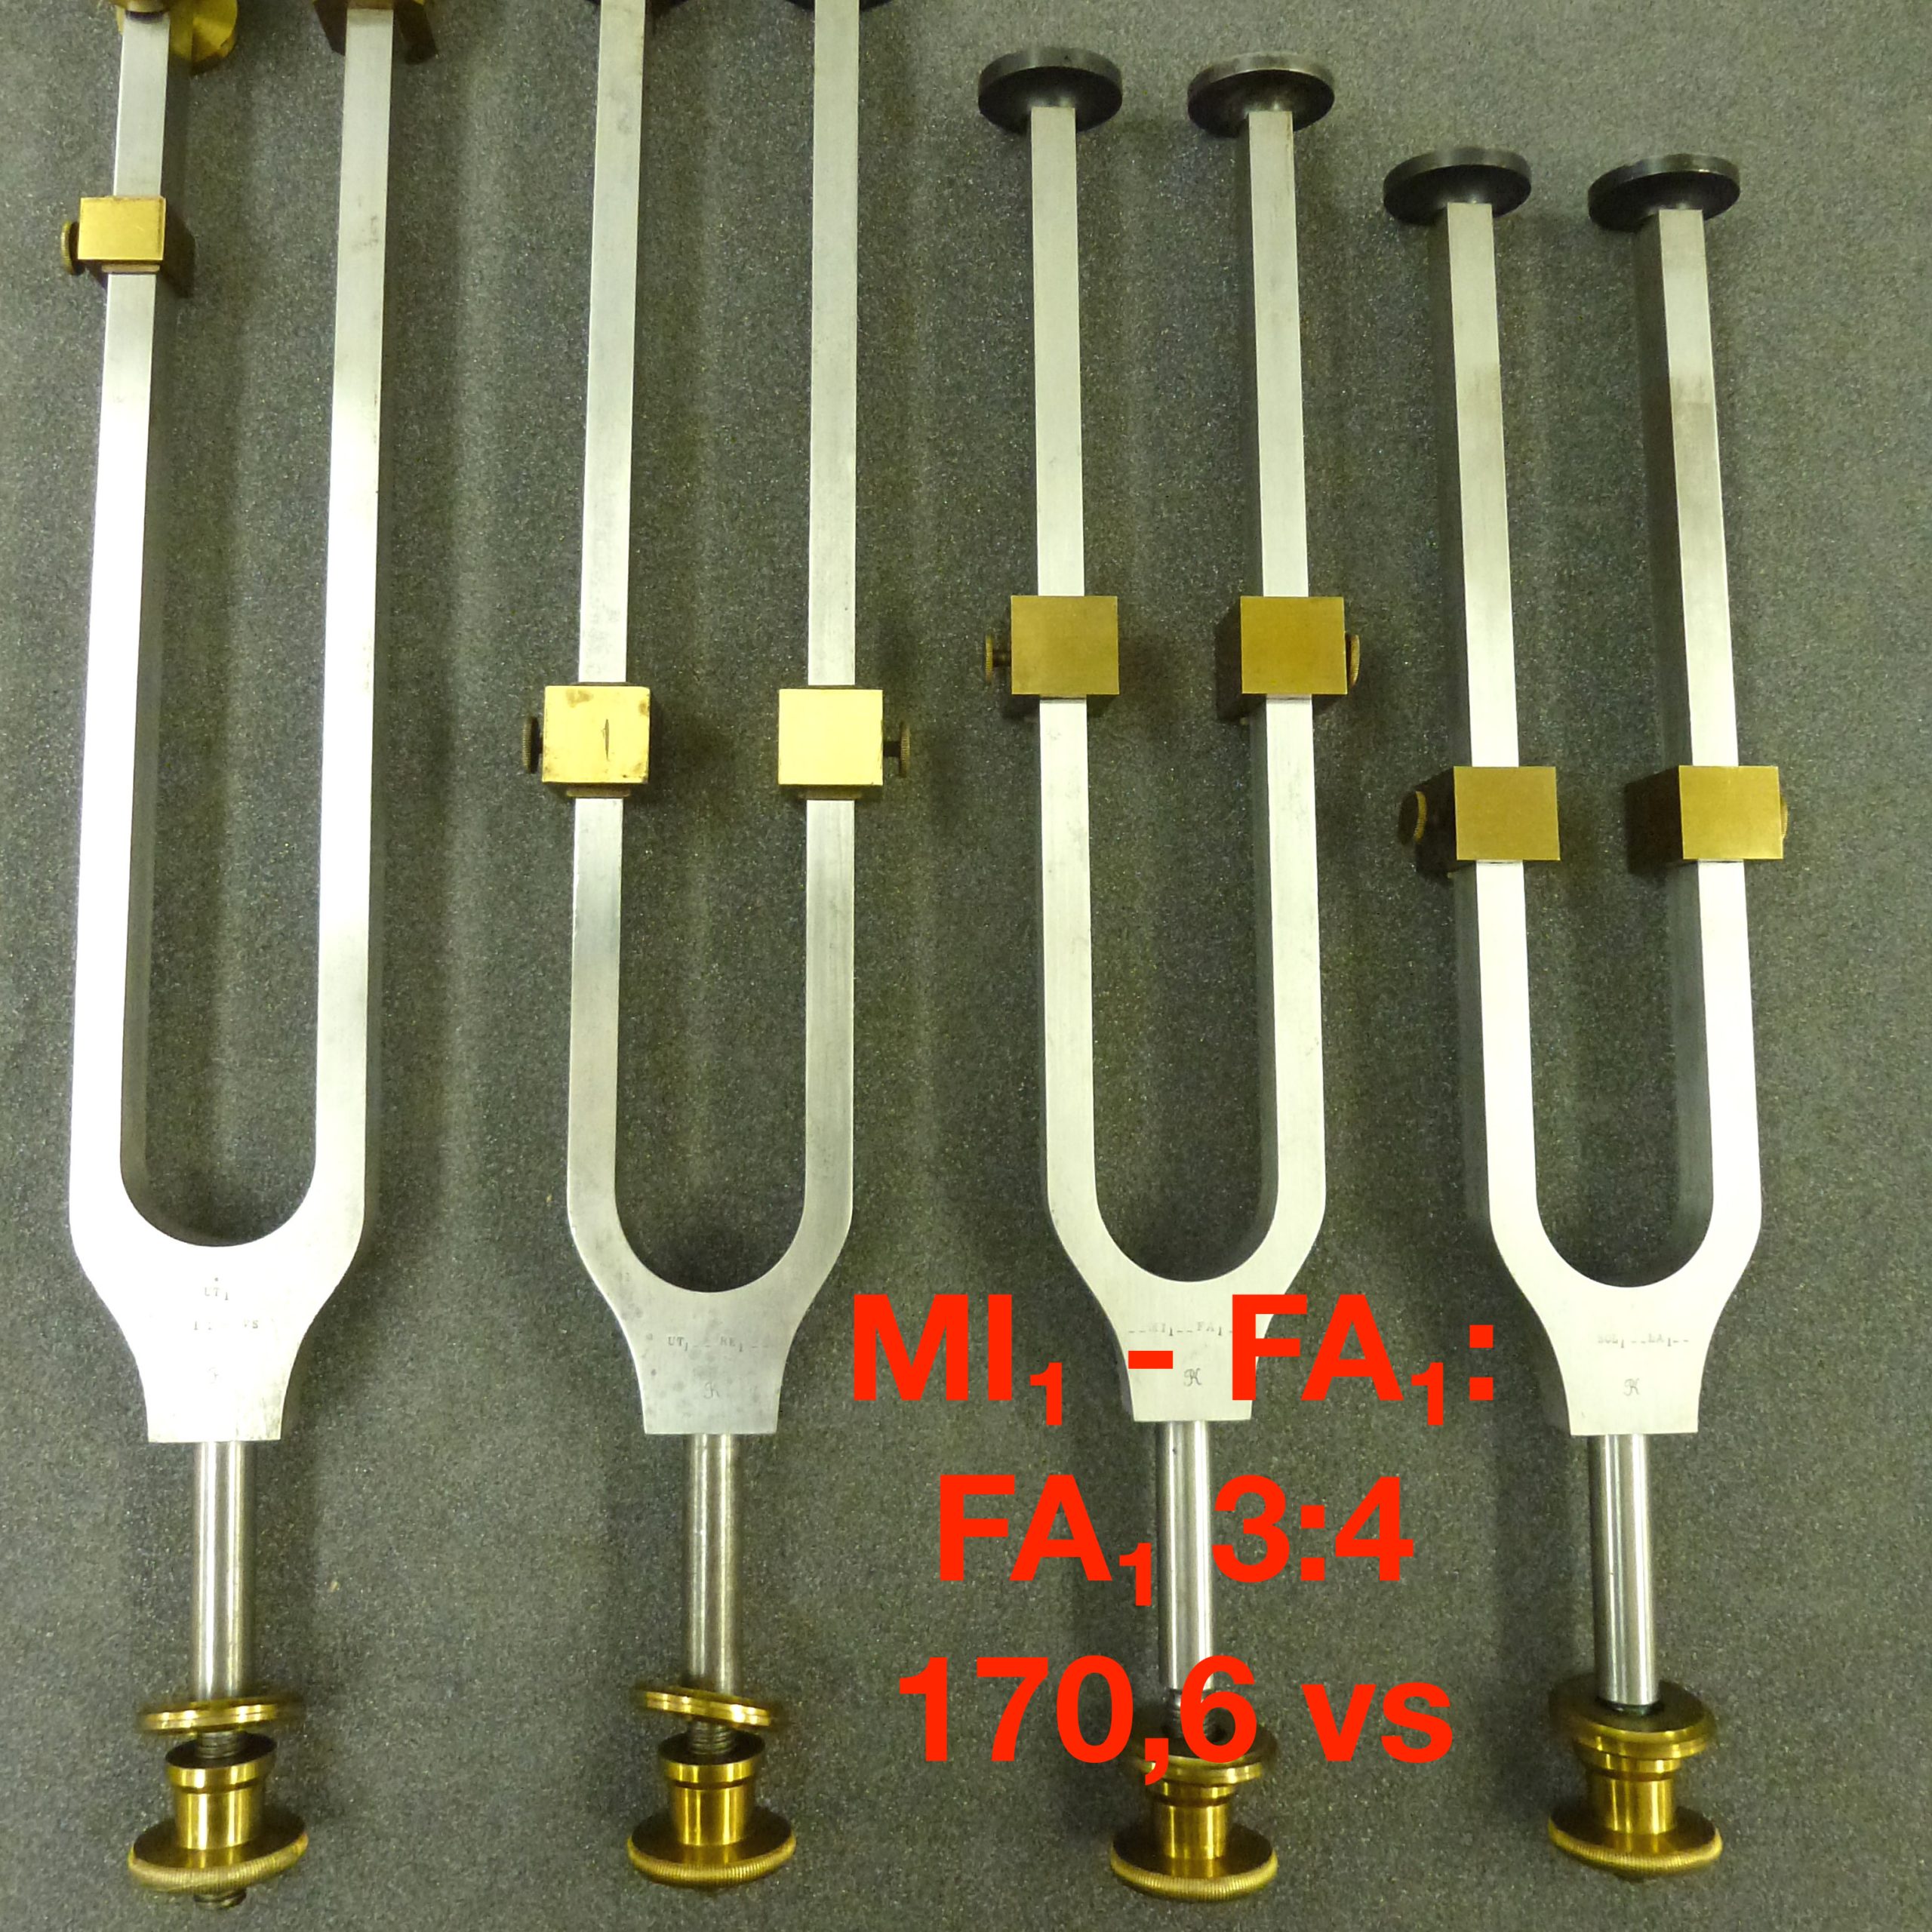 Tuning fork by Dr. R. König: MI₁ - FA₁: FA₁ 3:4